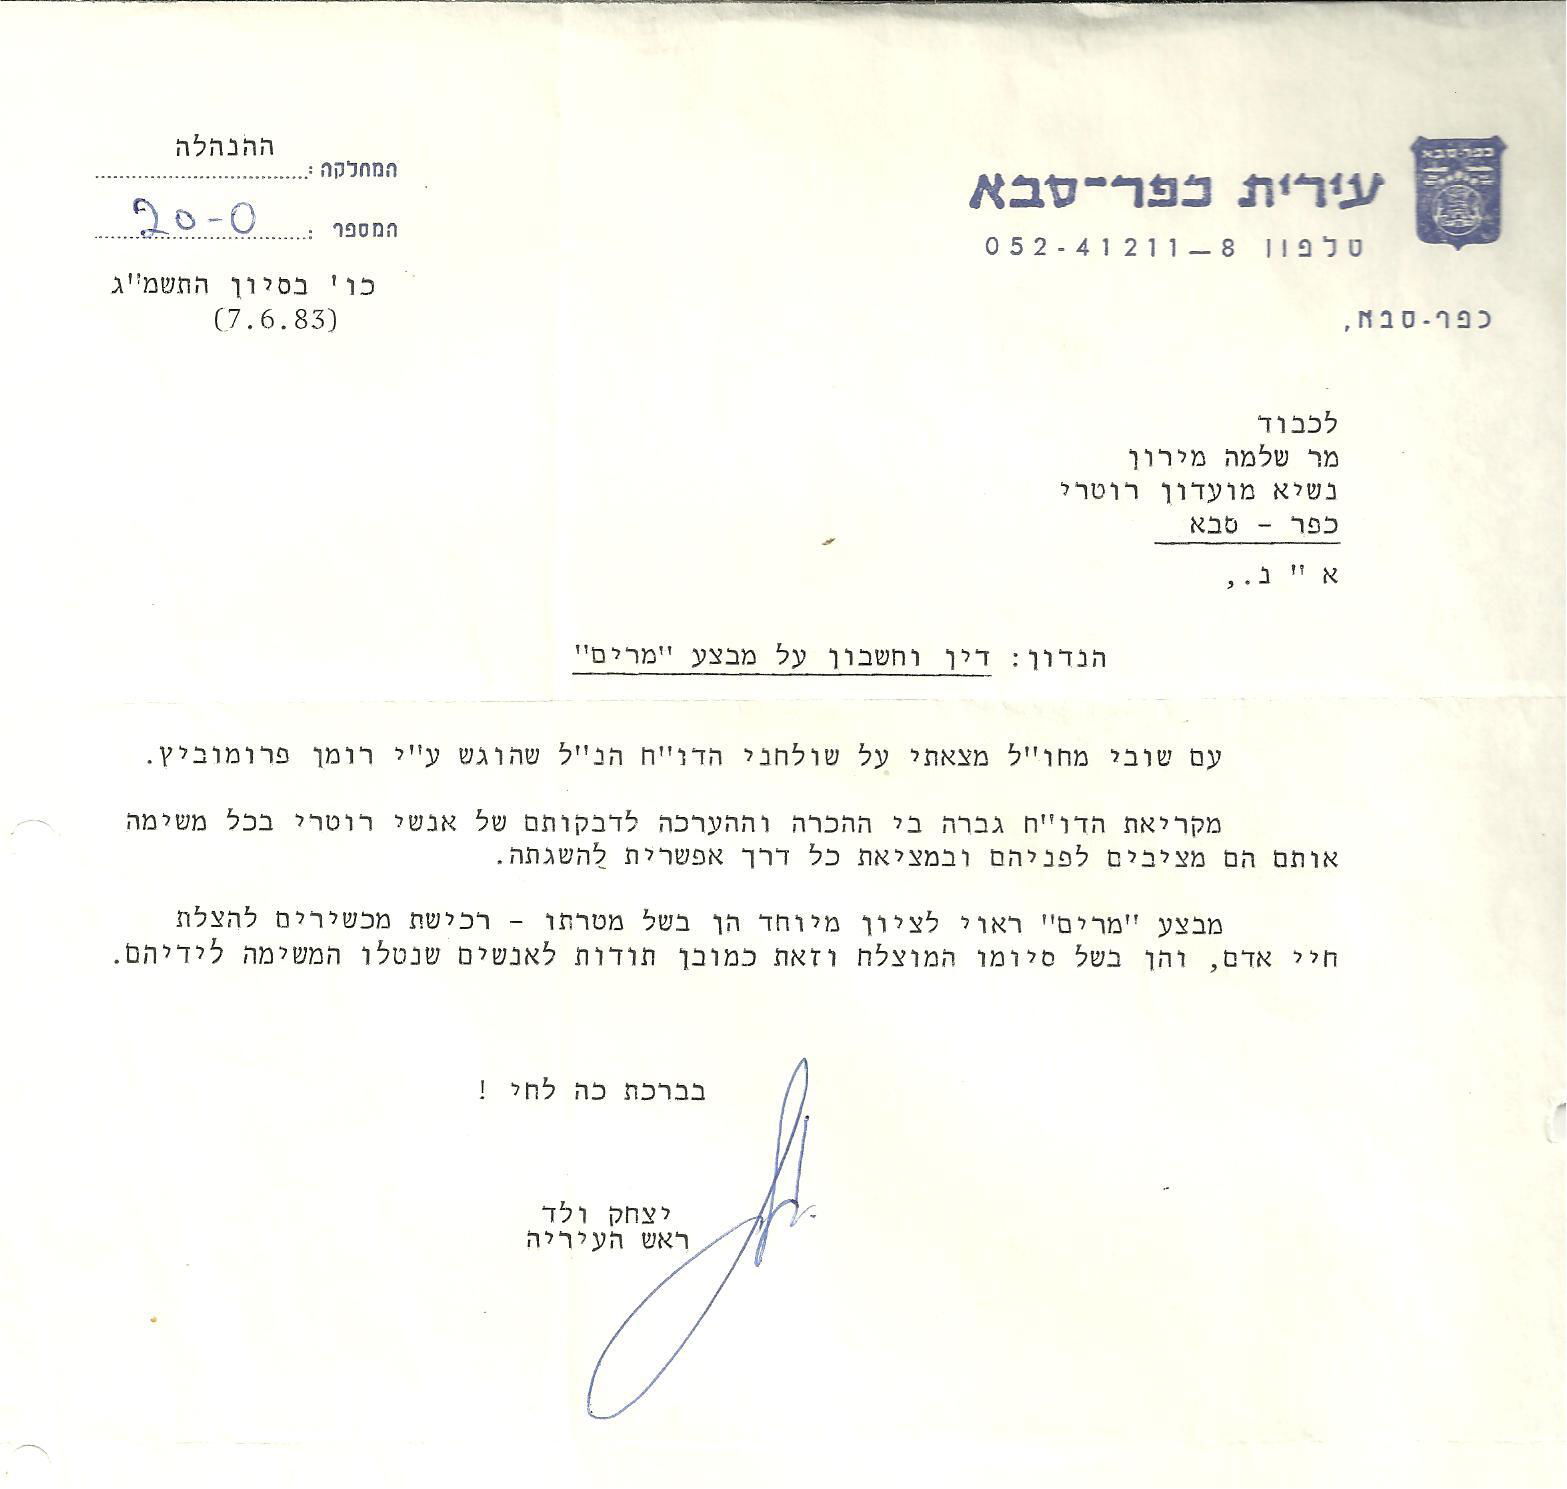 מכתב תודה של ראש העיר - 1983